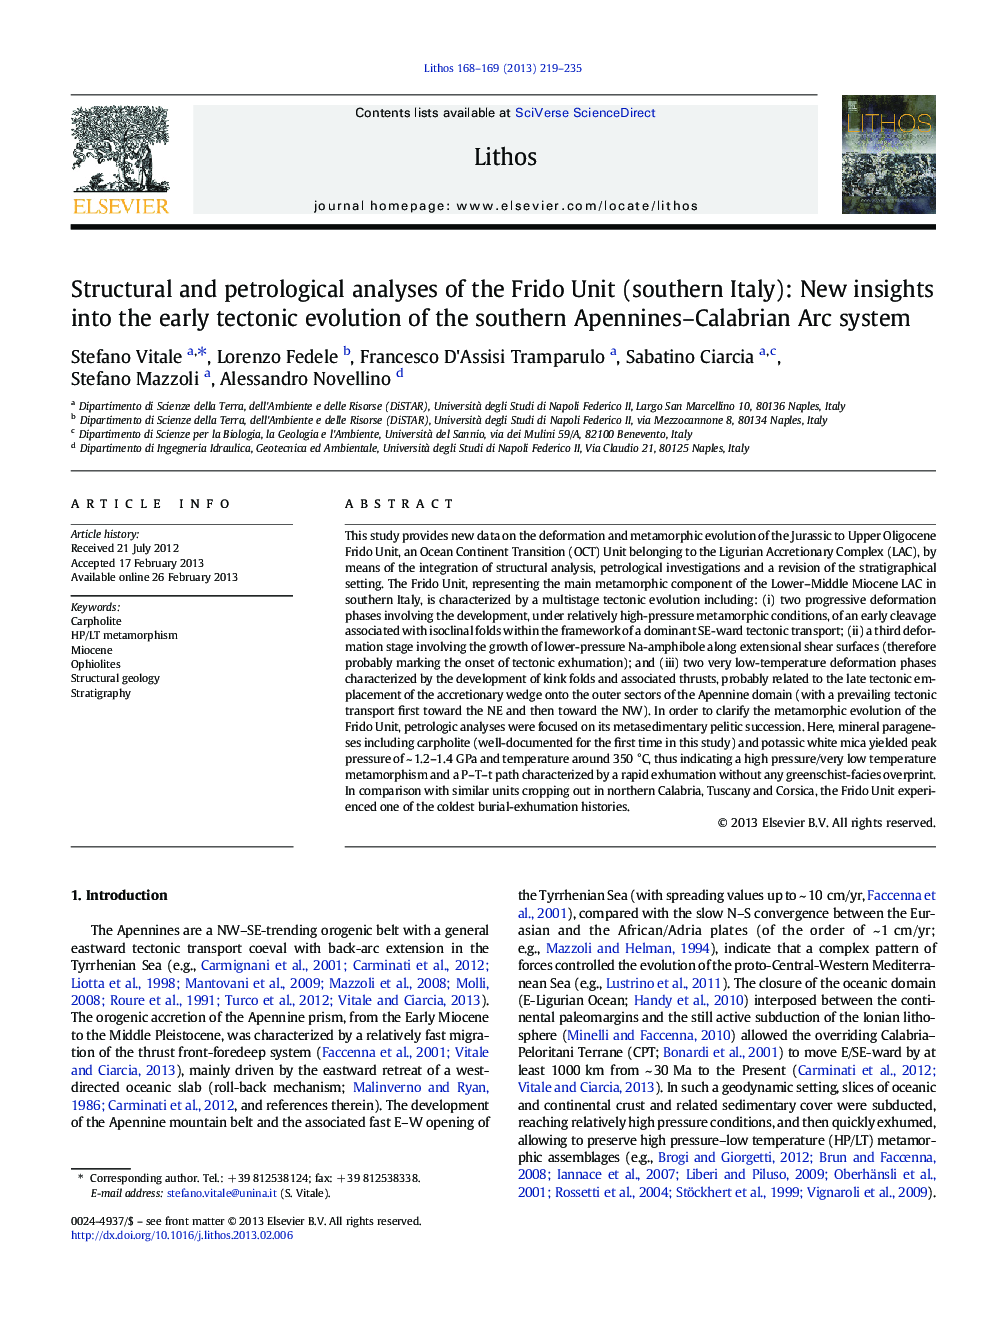 تجزیه و تحلیل ساختاری و سنگ شناسی واحد فروودو (جنوب ایتالیا): بینش جدید در مورد تکامل اولیه تکتونیکی در جنوب آپنینا 